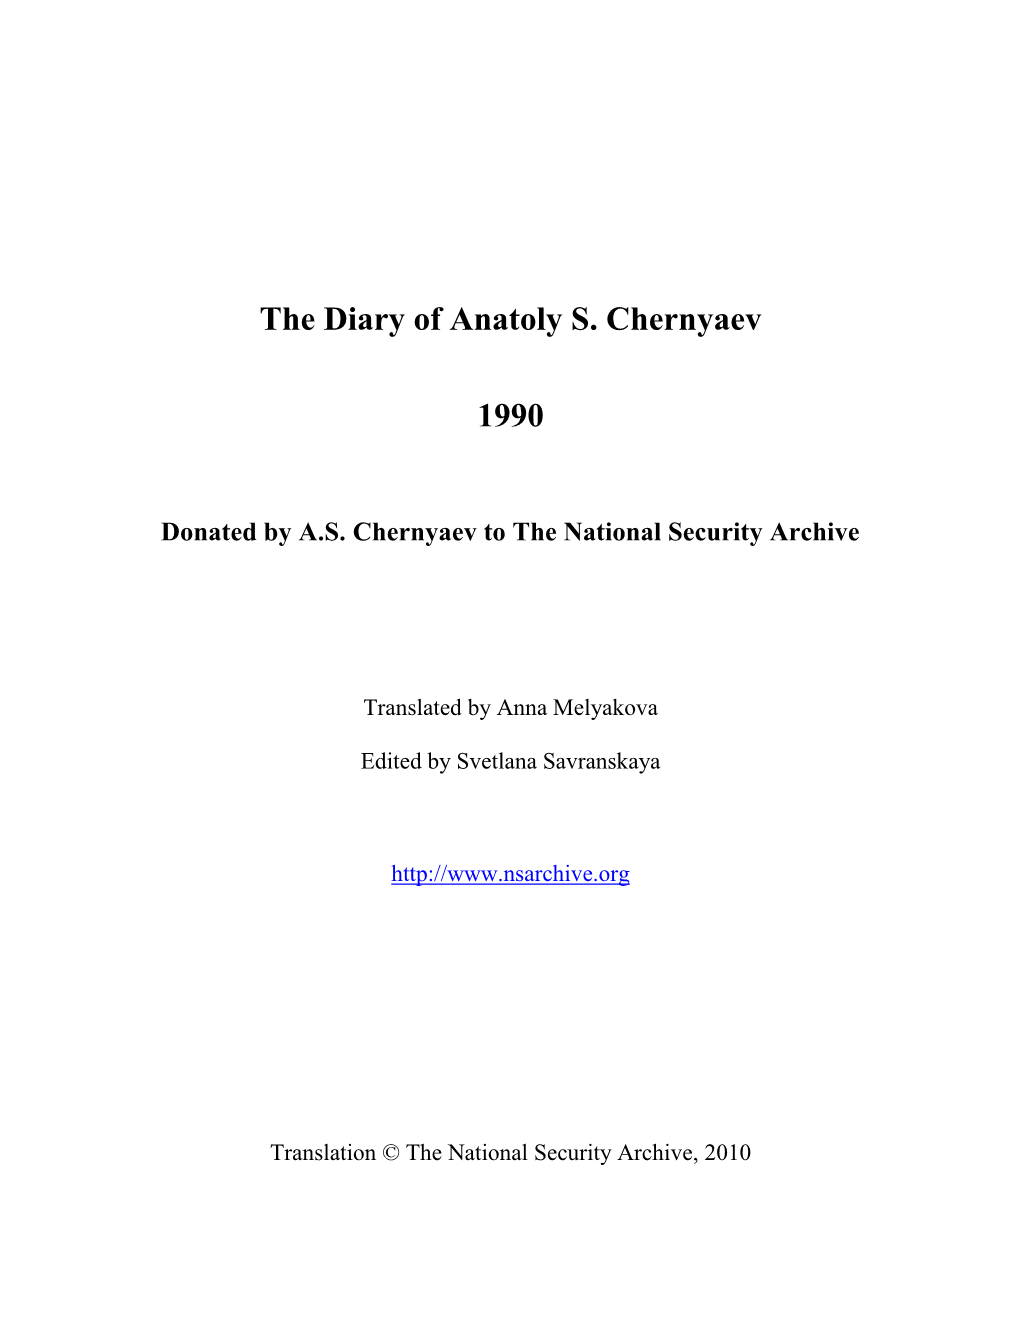 The Diary of Anatoly S. Chernyaev 1990